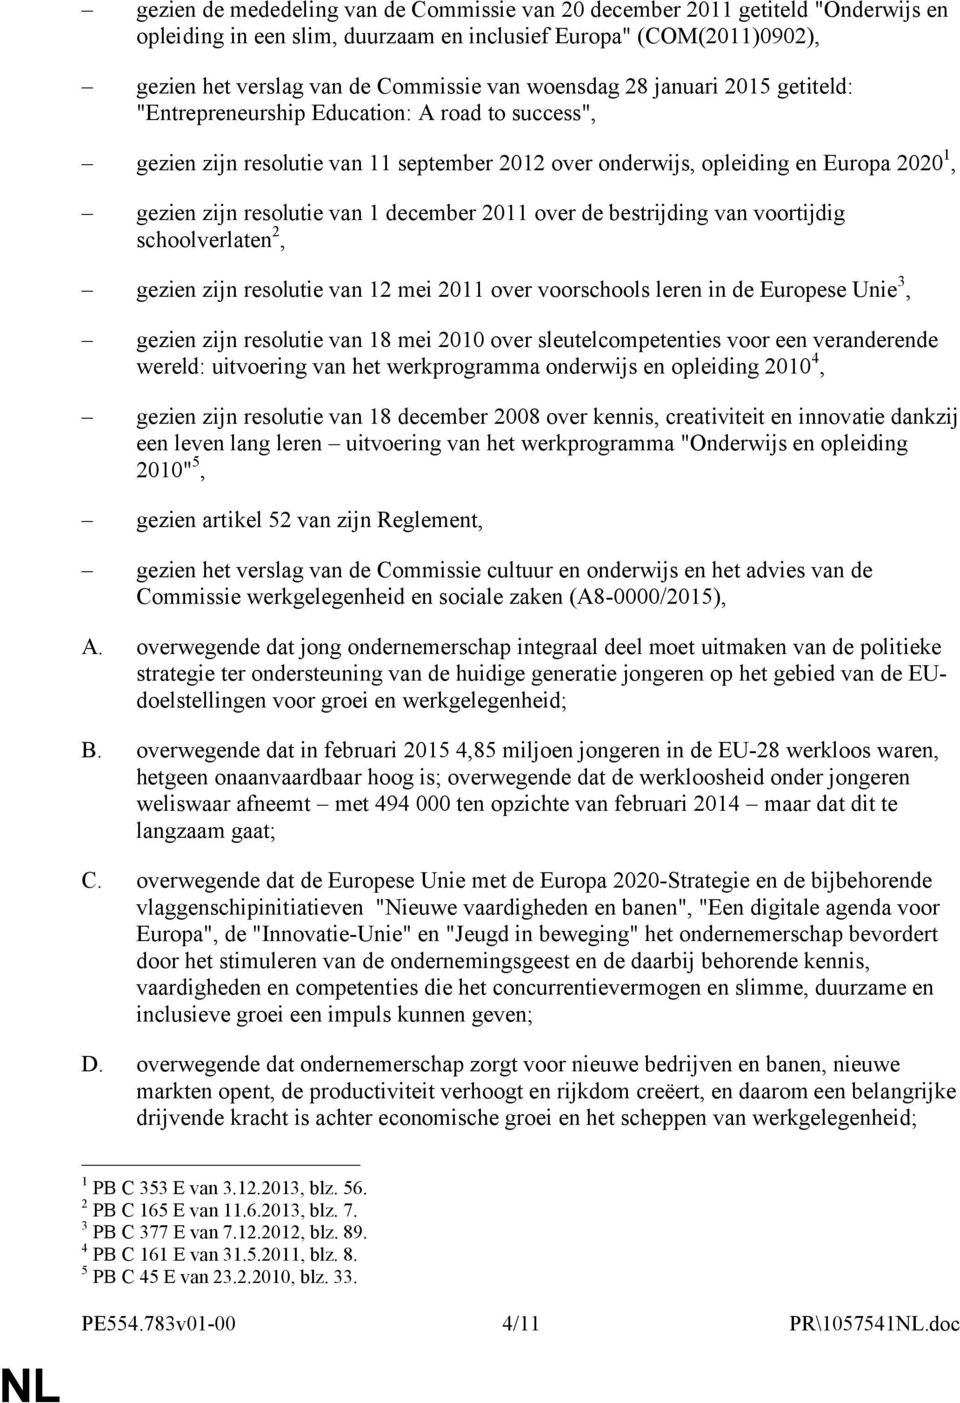 december 2011 over de bestrijding van voortijdig schoolverlaten 2, gezien zijn resolutie van 12 mei 2011 over voorschools leren in de Europese Unie 3, gezien zijn resolutie van 18 mei 2010 over